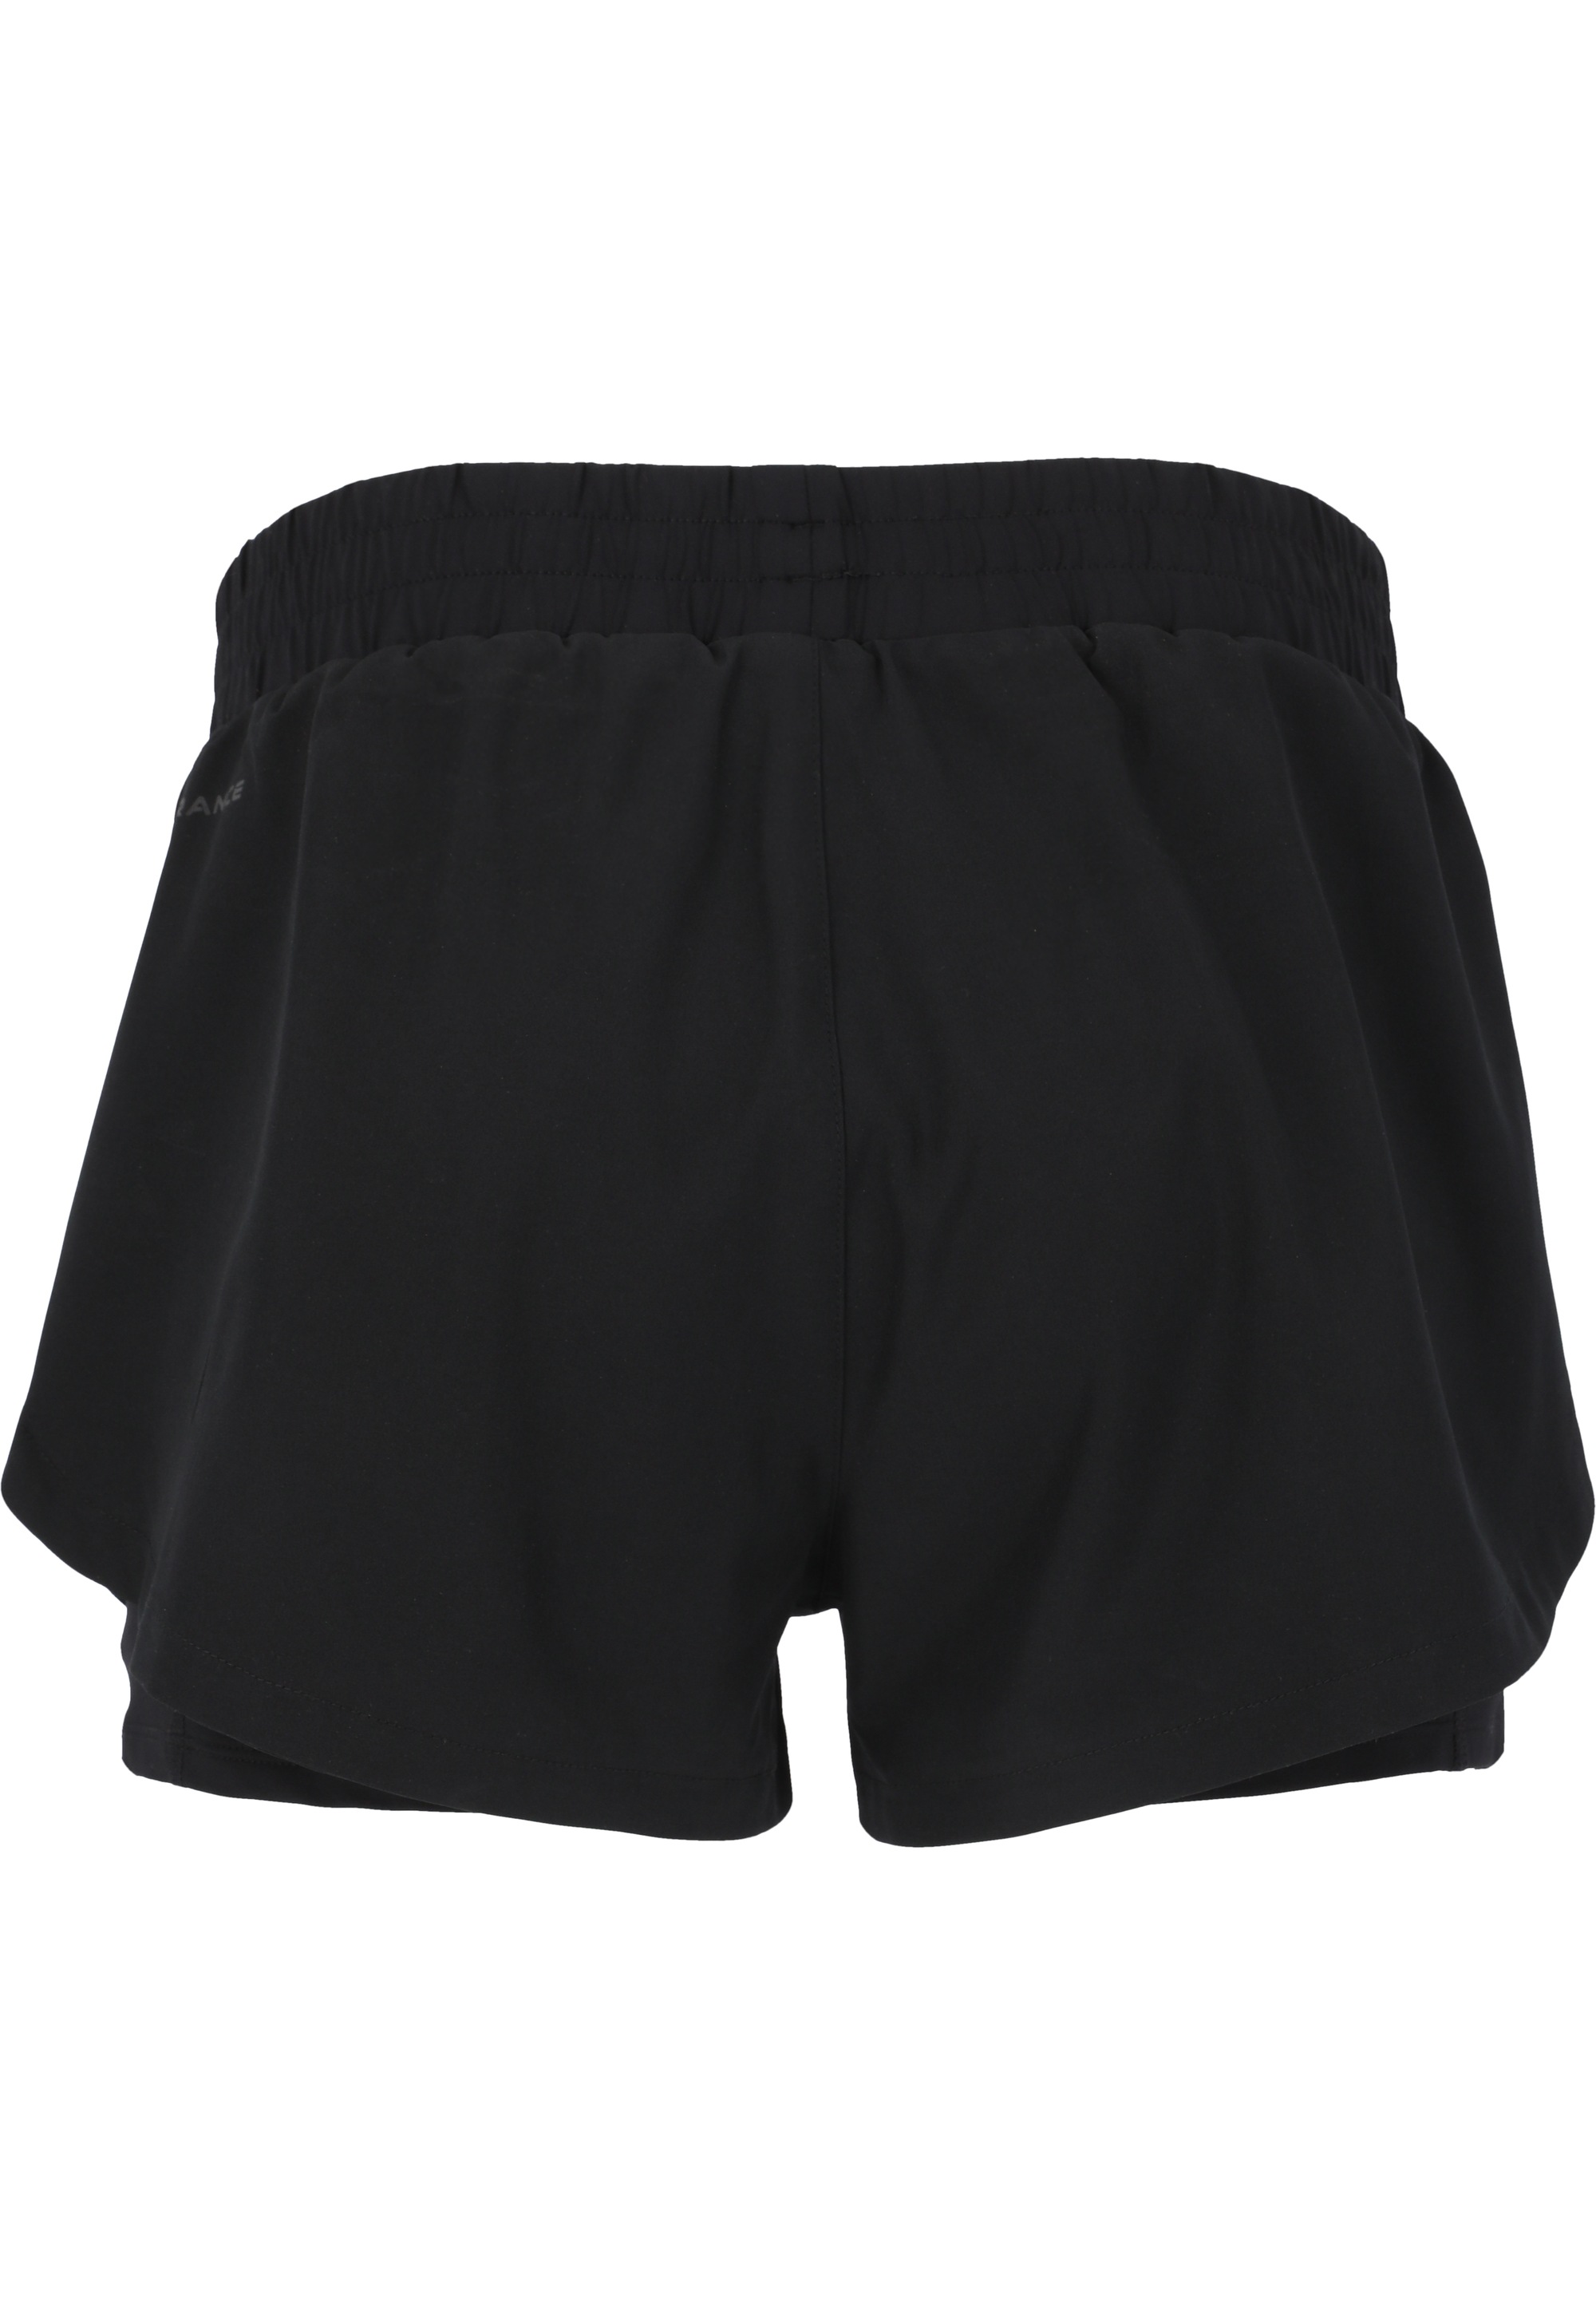 ENDURANCE Shorts »Yarol«, mit praktischer shoppen 2-in-1-Funktion